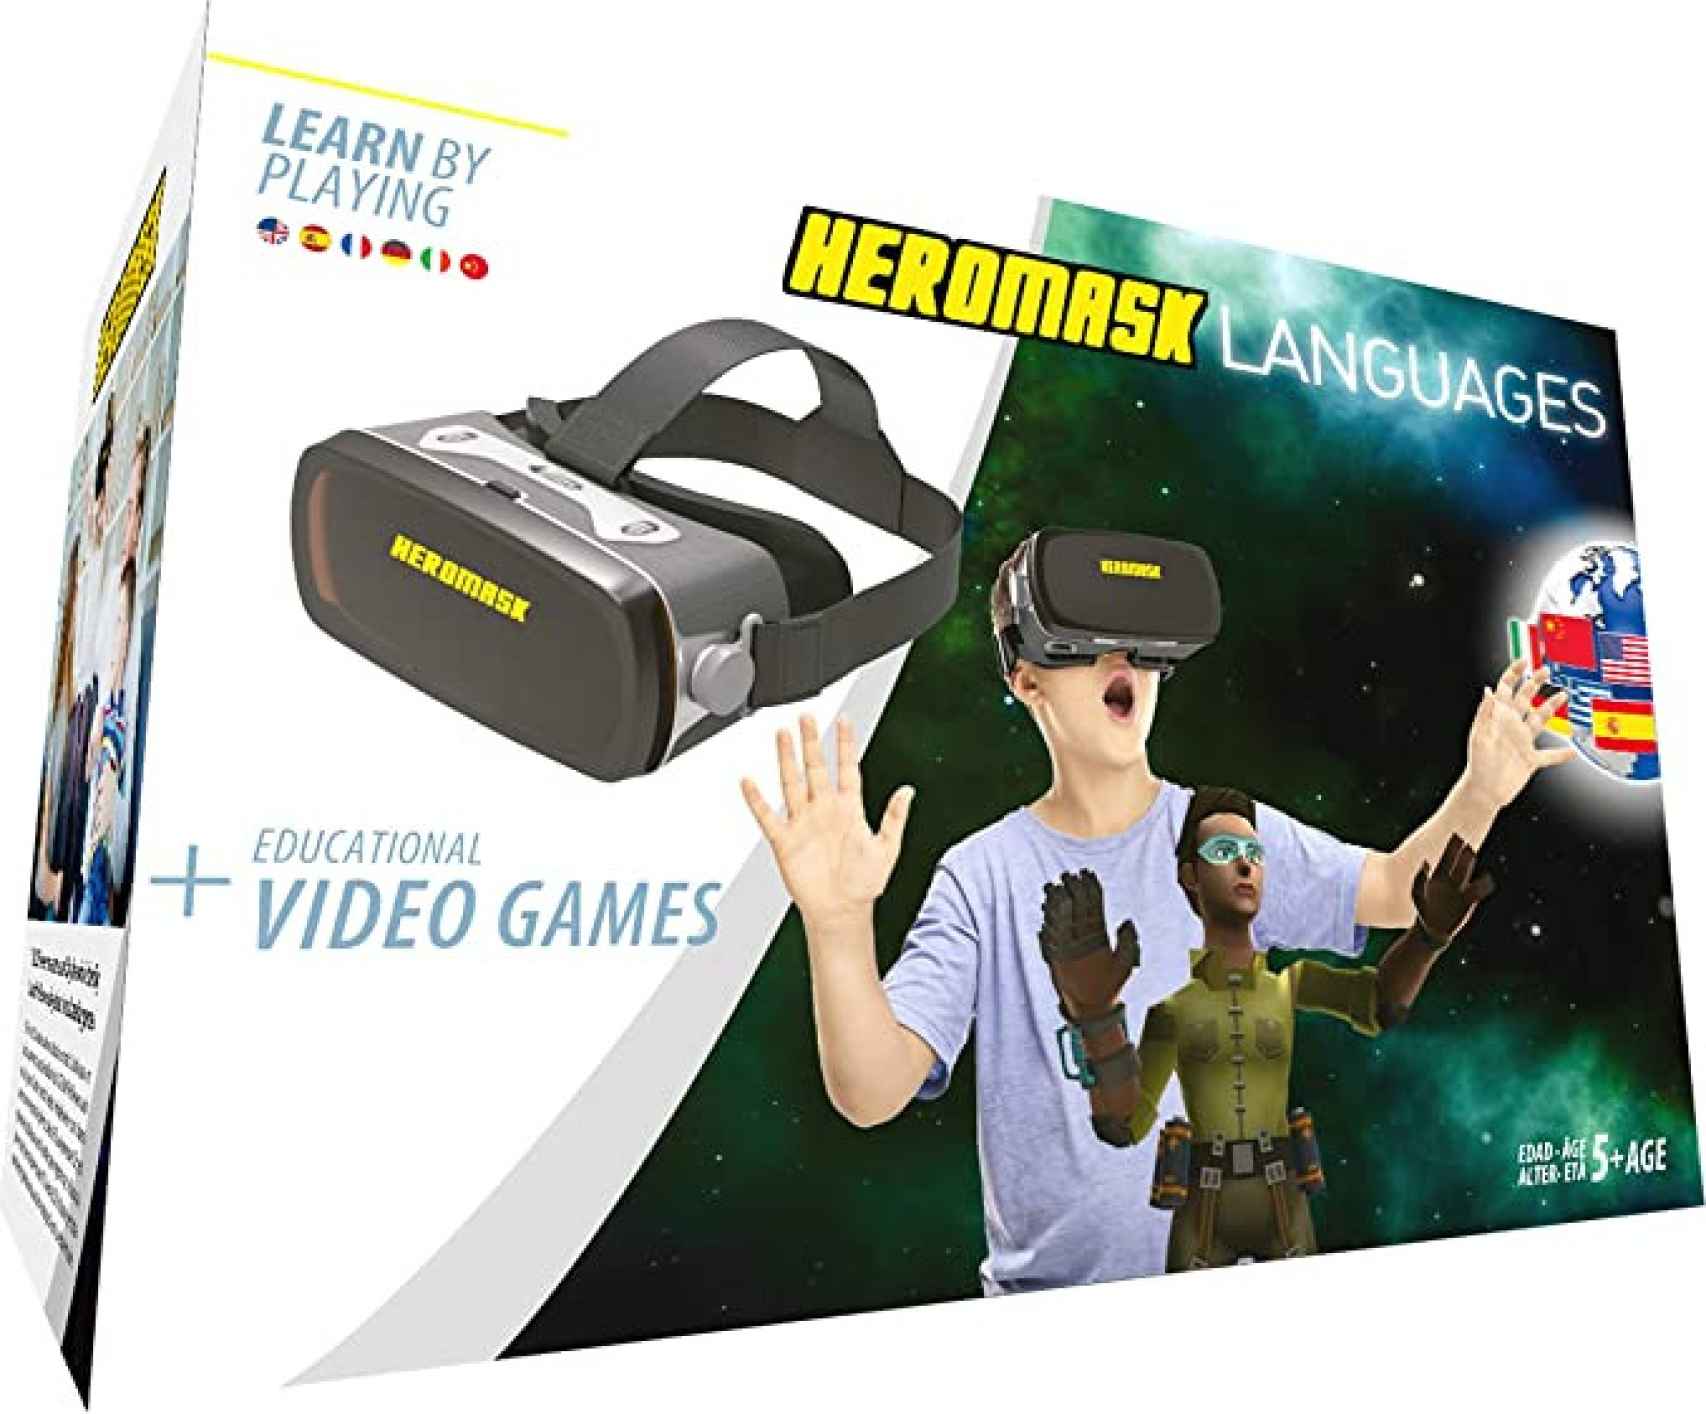 Pack de gafas y juegos de realidad virtual de Amazon.